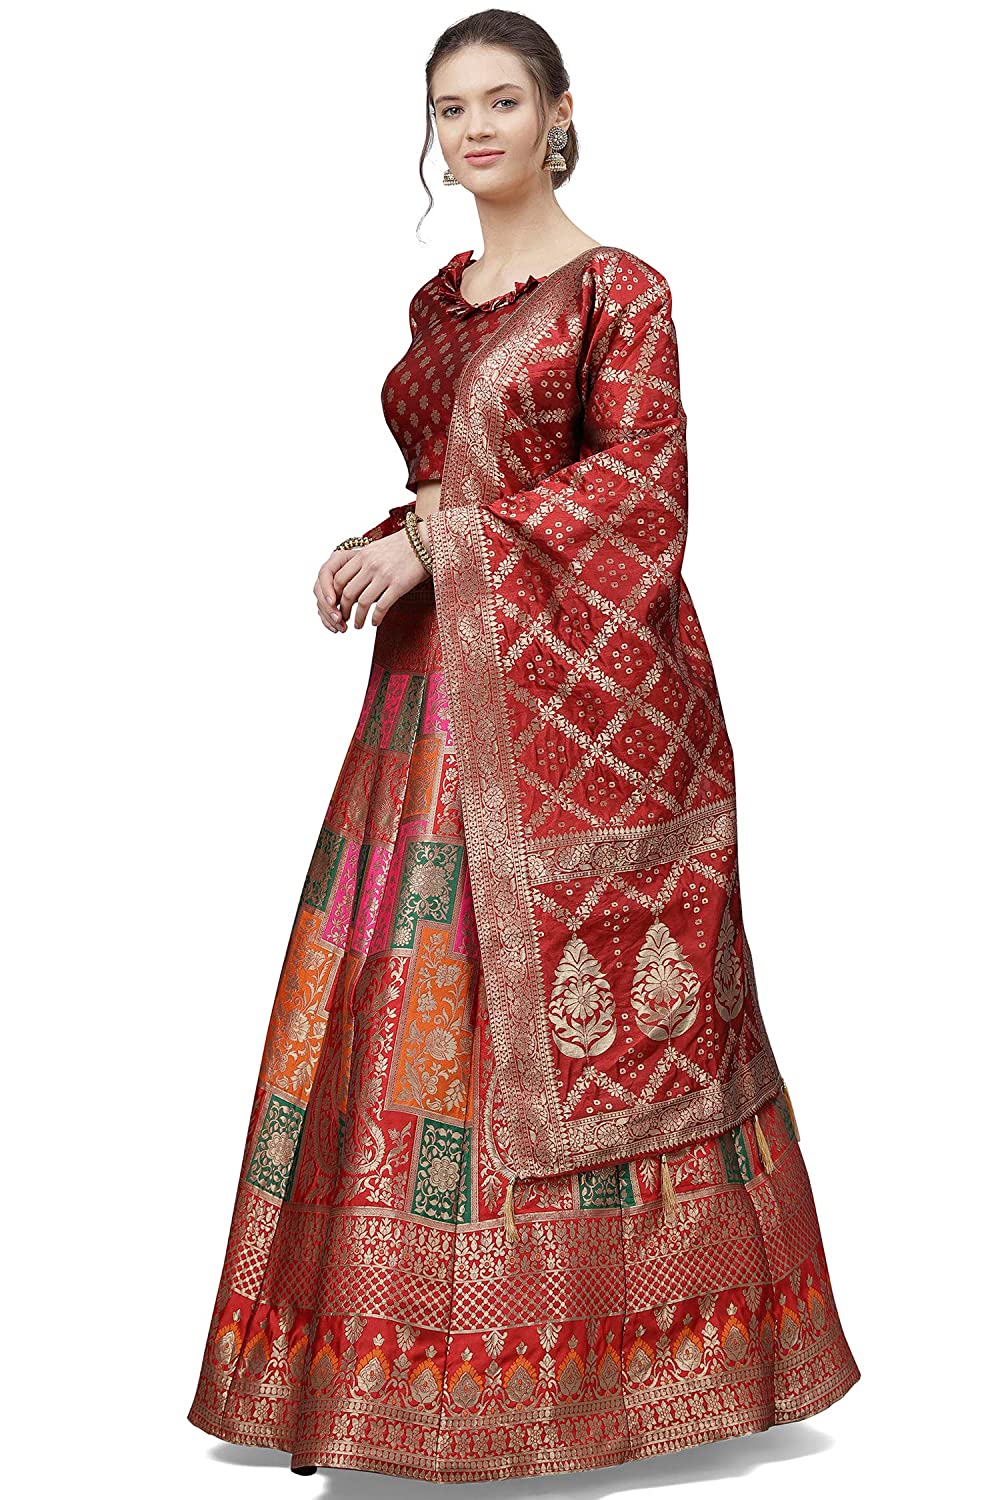 Women's Faux Silk Semi stitched Lehenga Choli (Red-Bandhani_Red_Free Size)